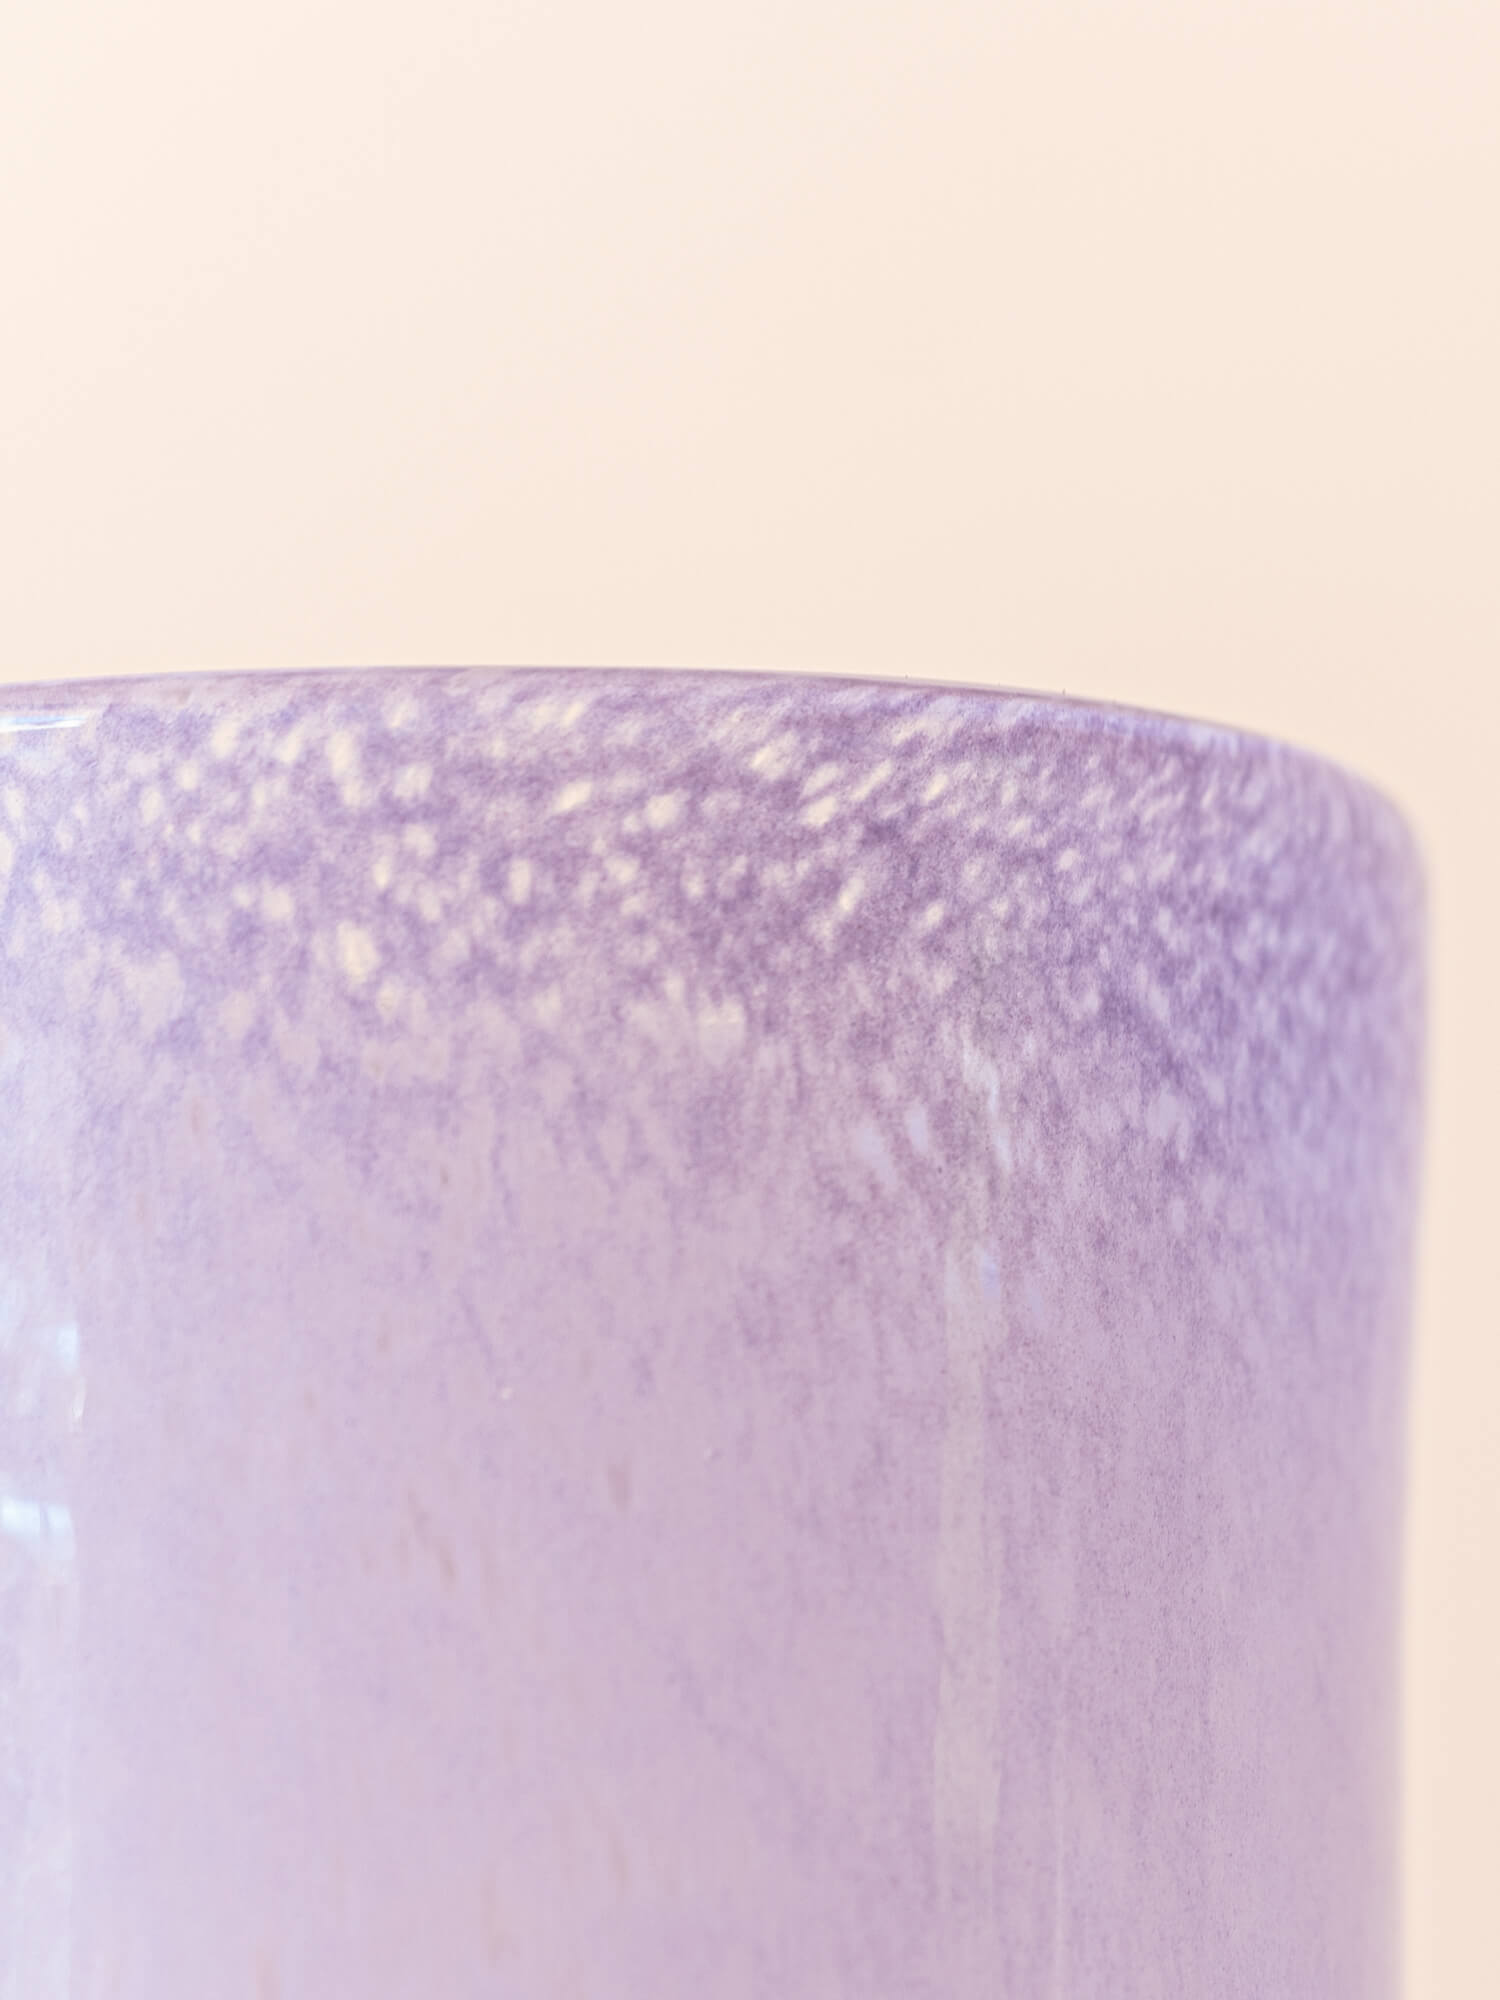 BROSTE COPENHAGEN Mouthblown Glass Vase Purple - Dorit -